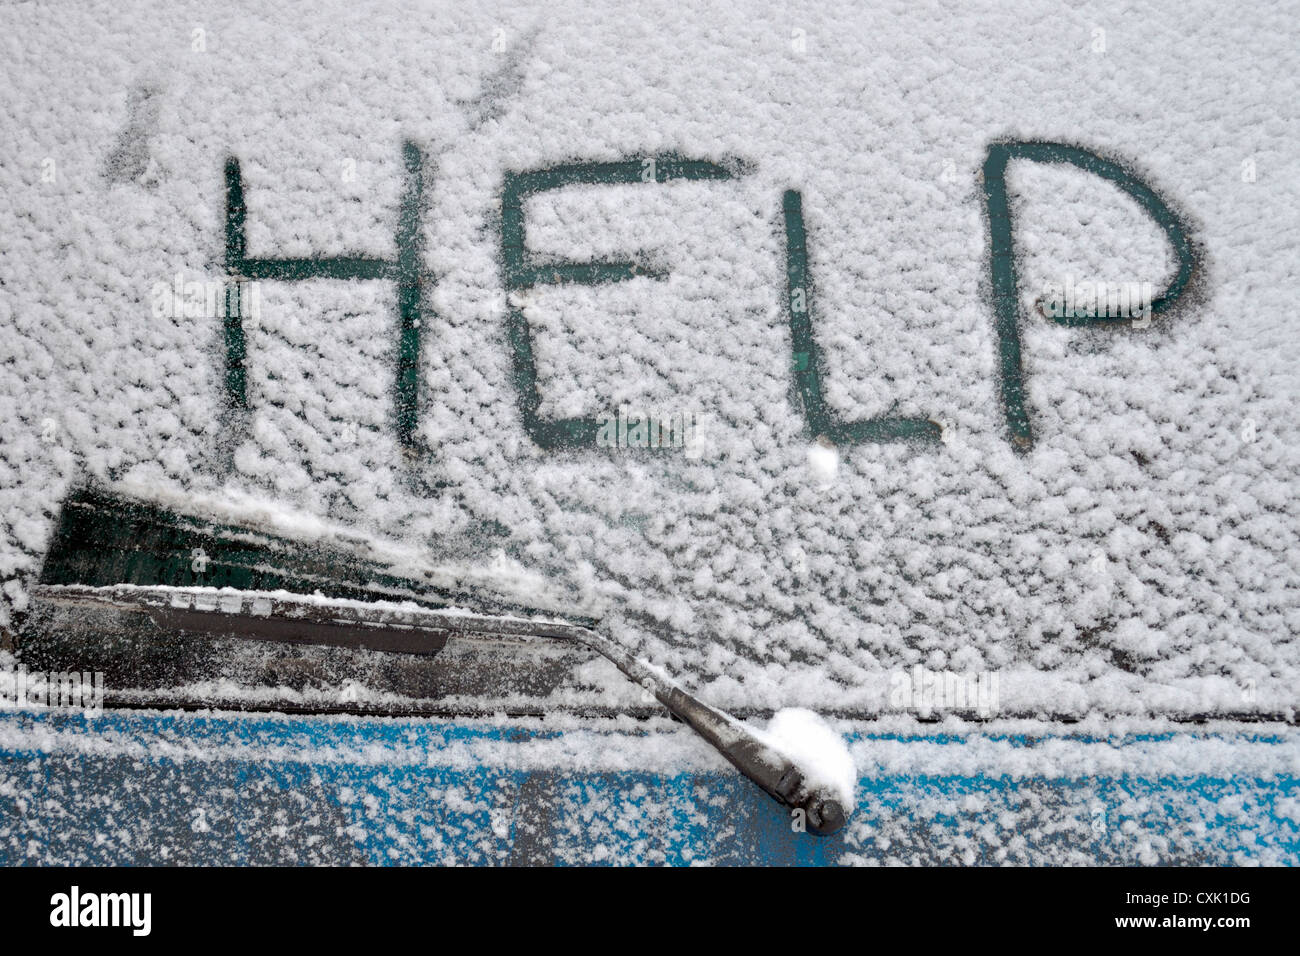 Aide mot écrit au dos de la fenêtre de voiture couverte par les fortes chutes de neige Banque D'Images